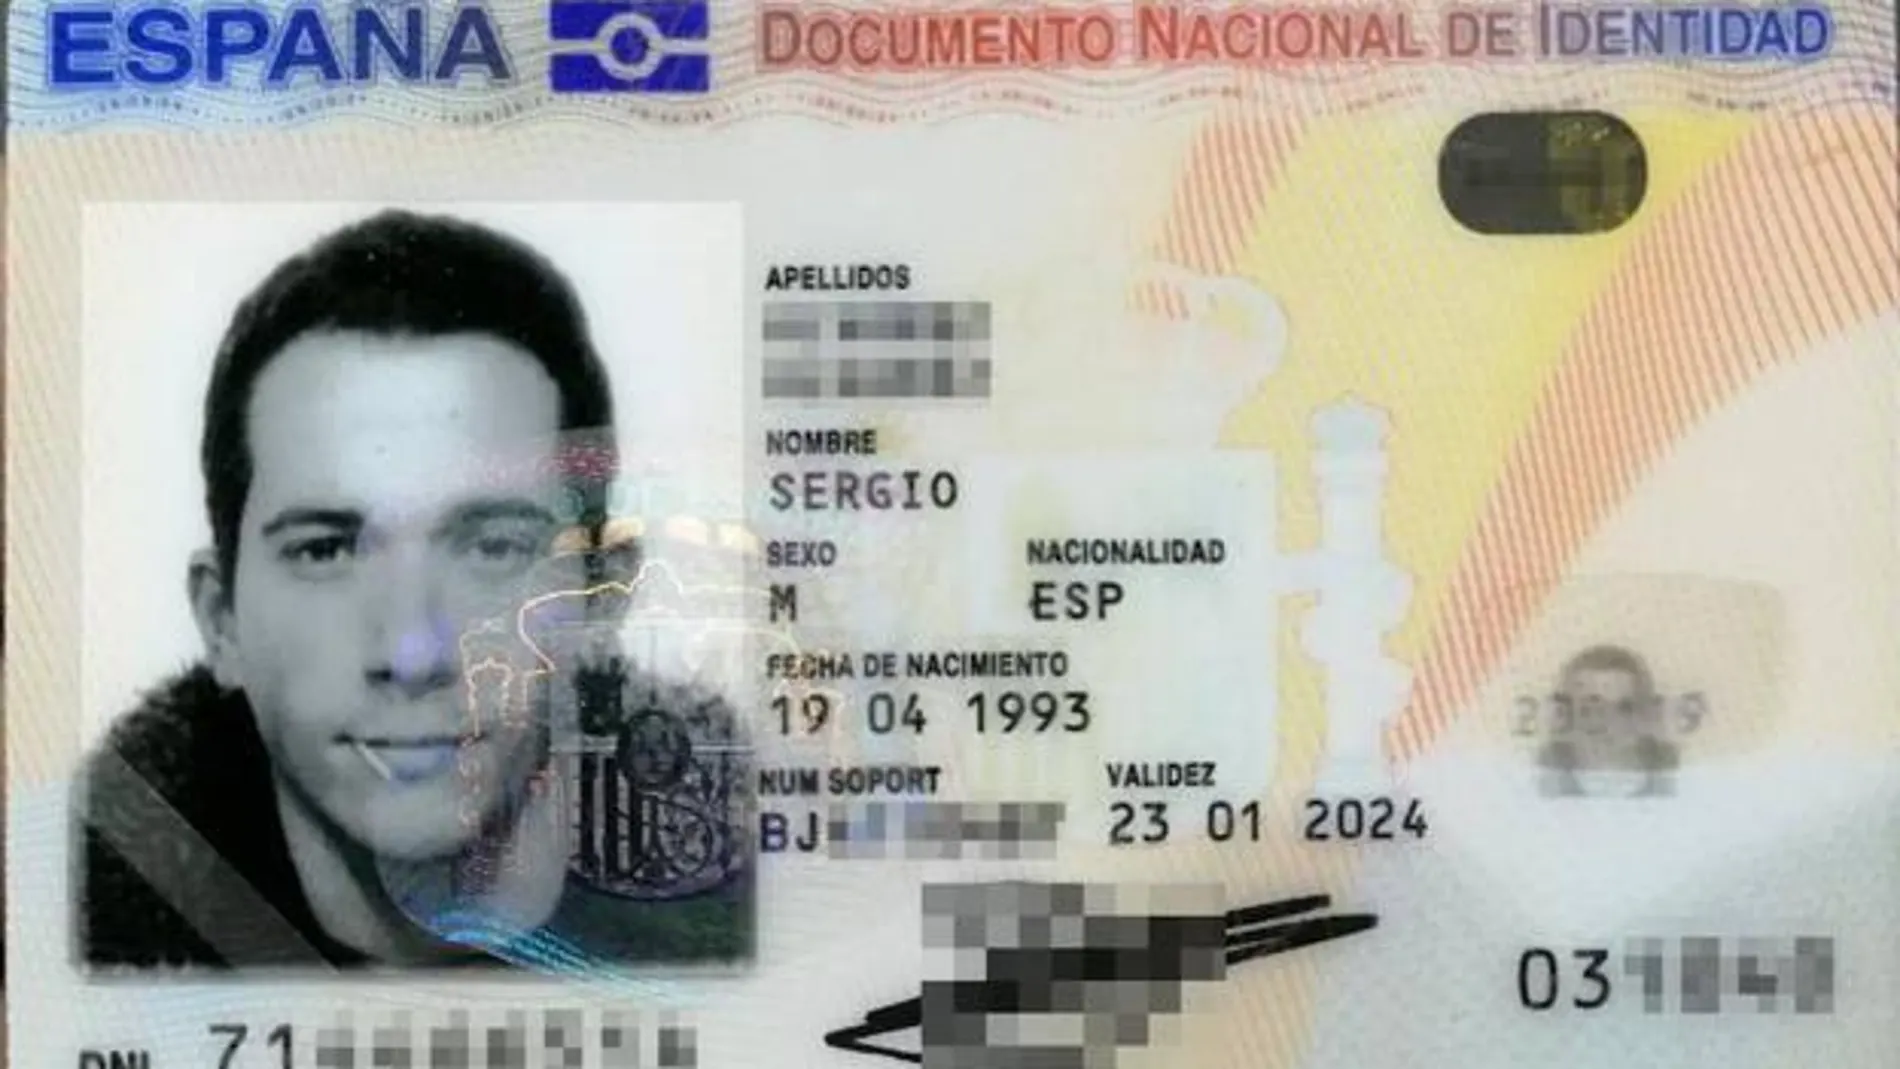 El Documento Nacional de Identidad del leonés Sergio Álvarez saliendo con un palillo en la boca.